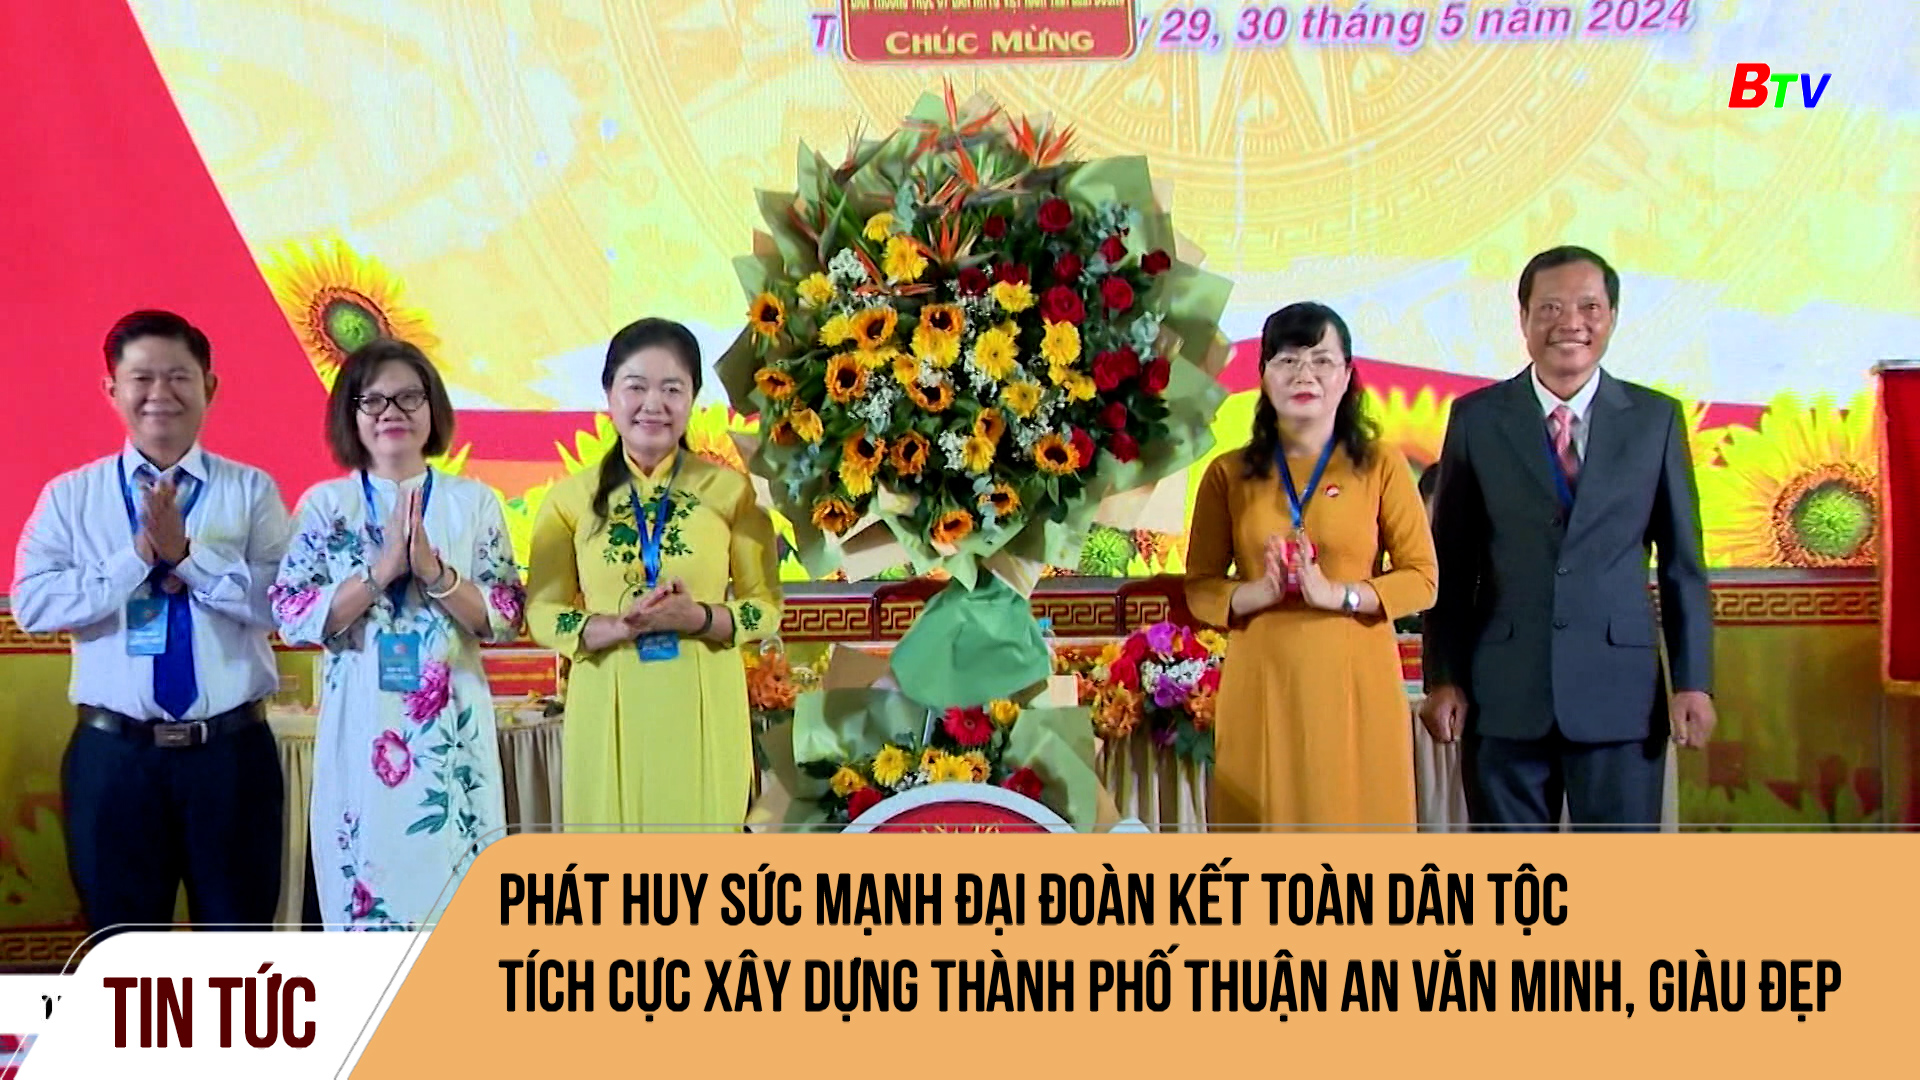 Phát huy sức mạnh đại đoàn kết toàn dân tộc tích cực xây dựng thành phố Thuận An văn minh, giàu đẹp